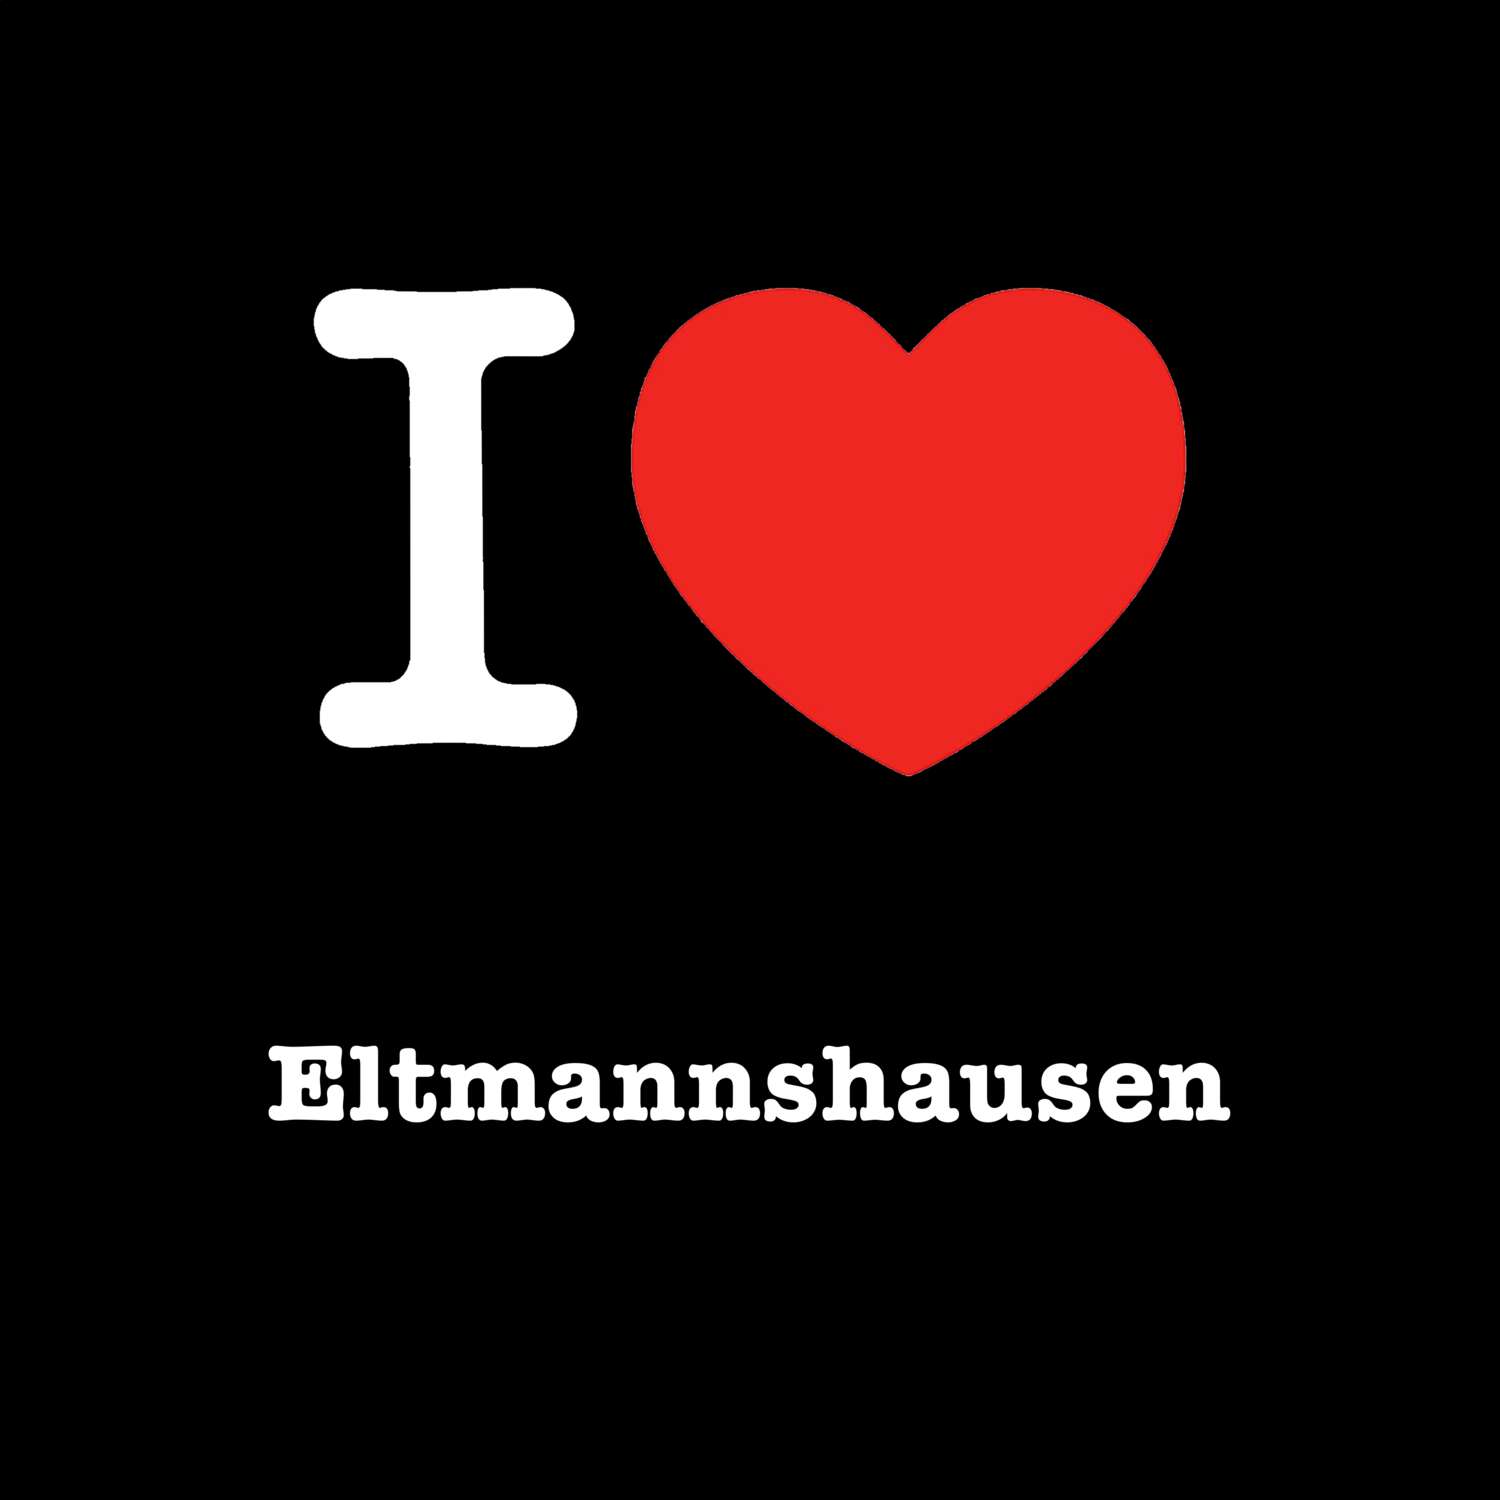 Eltmannshausen T-Shirt »I love«